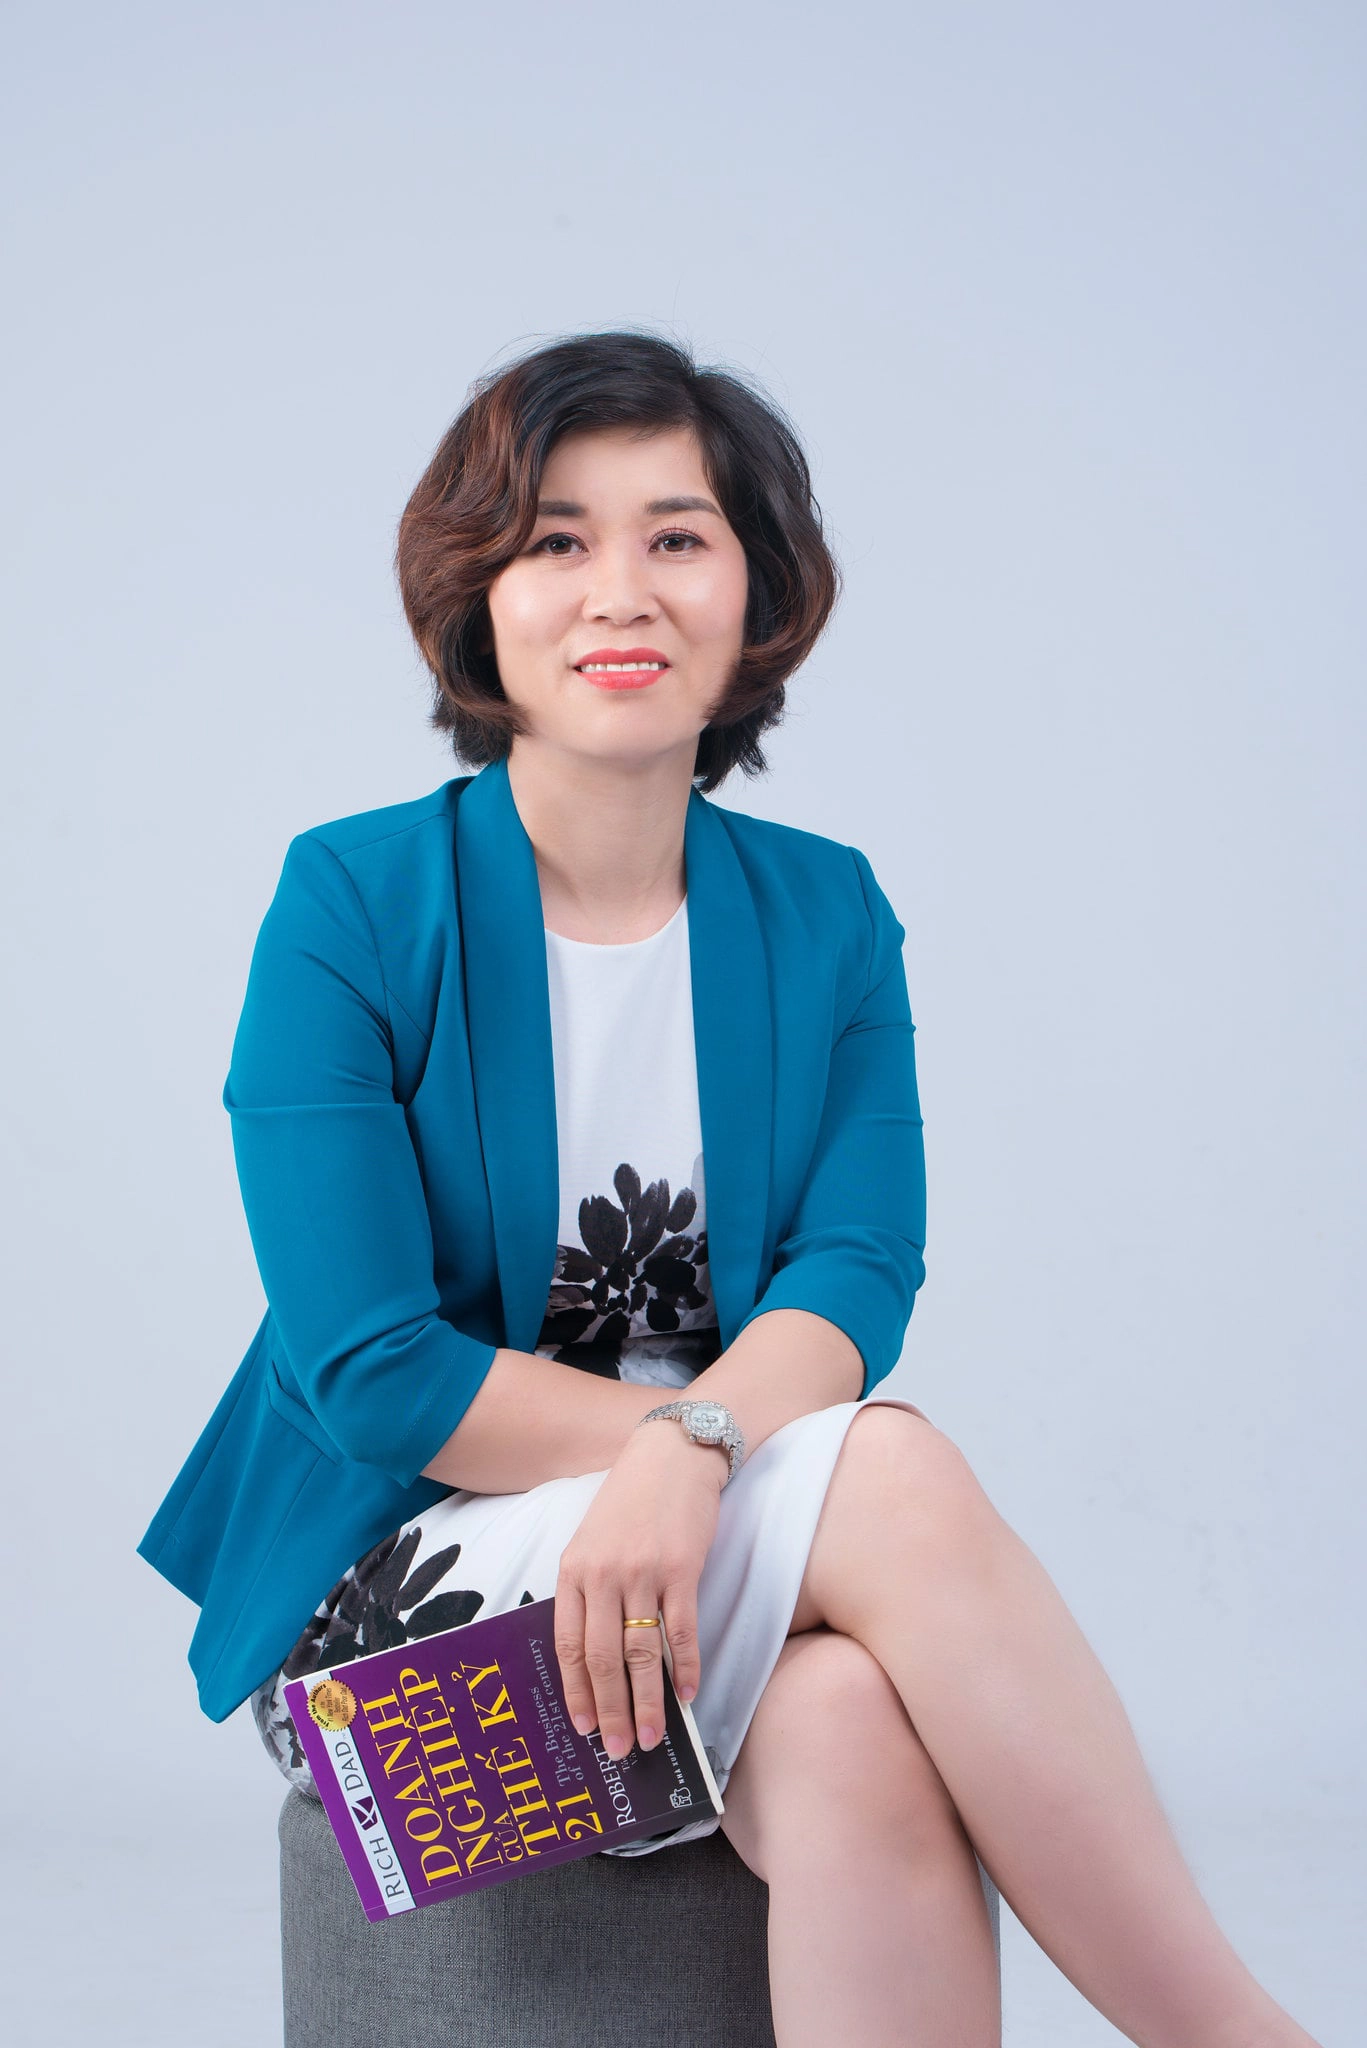 anh doanh nhan 1 min - 49 cách tạo dáng chụp ảnh profile đẹp, chuyên nghiệp nhất- HThao Studio